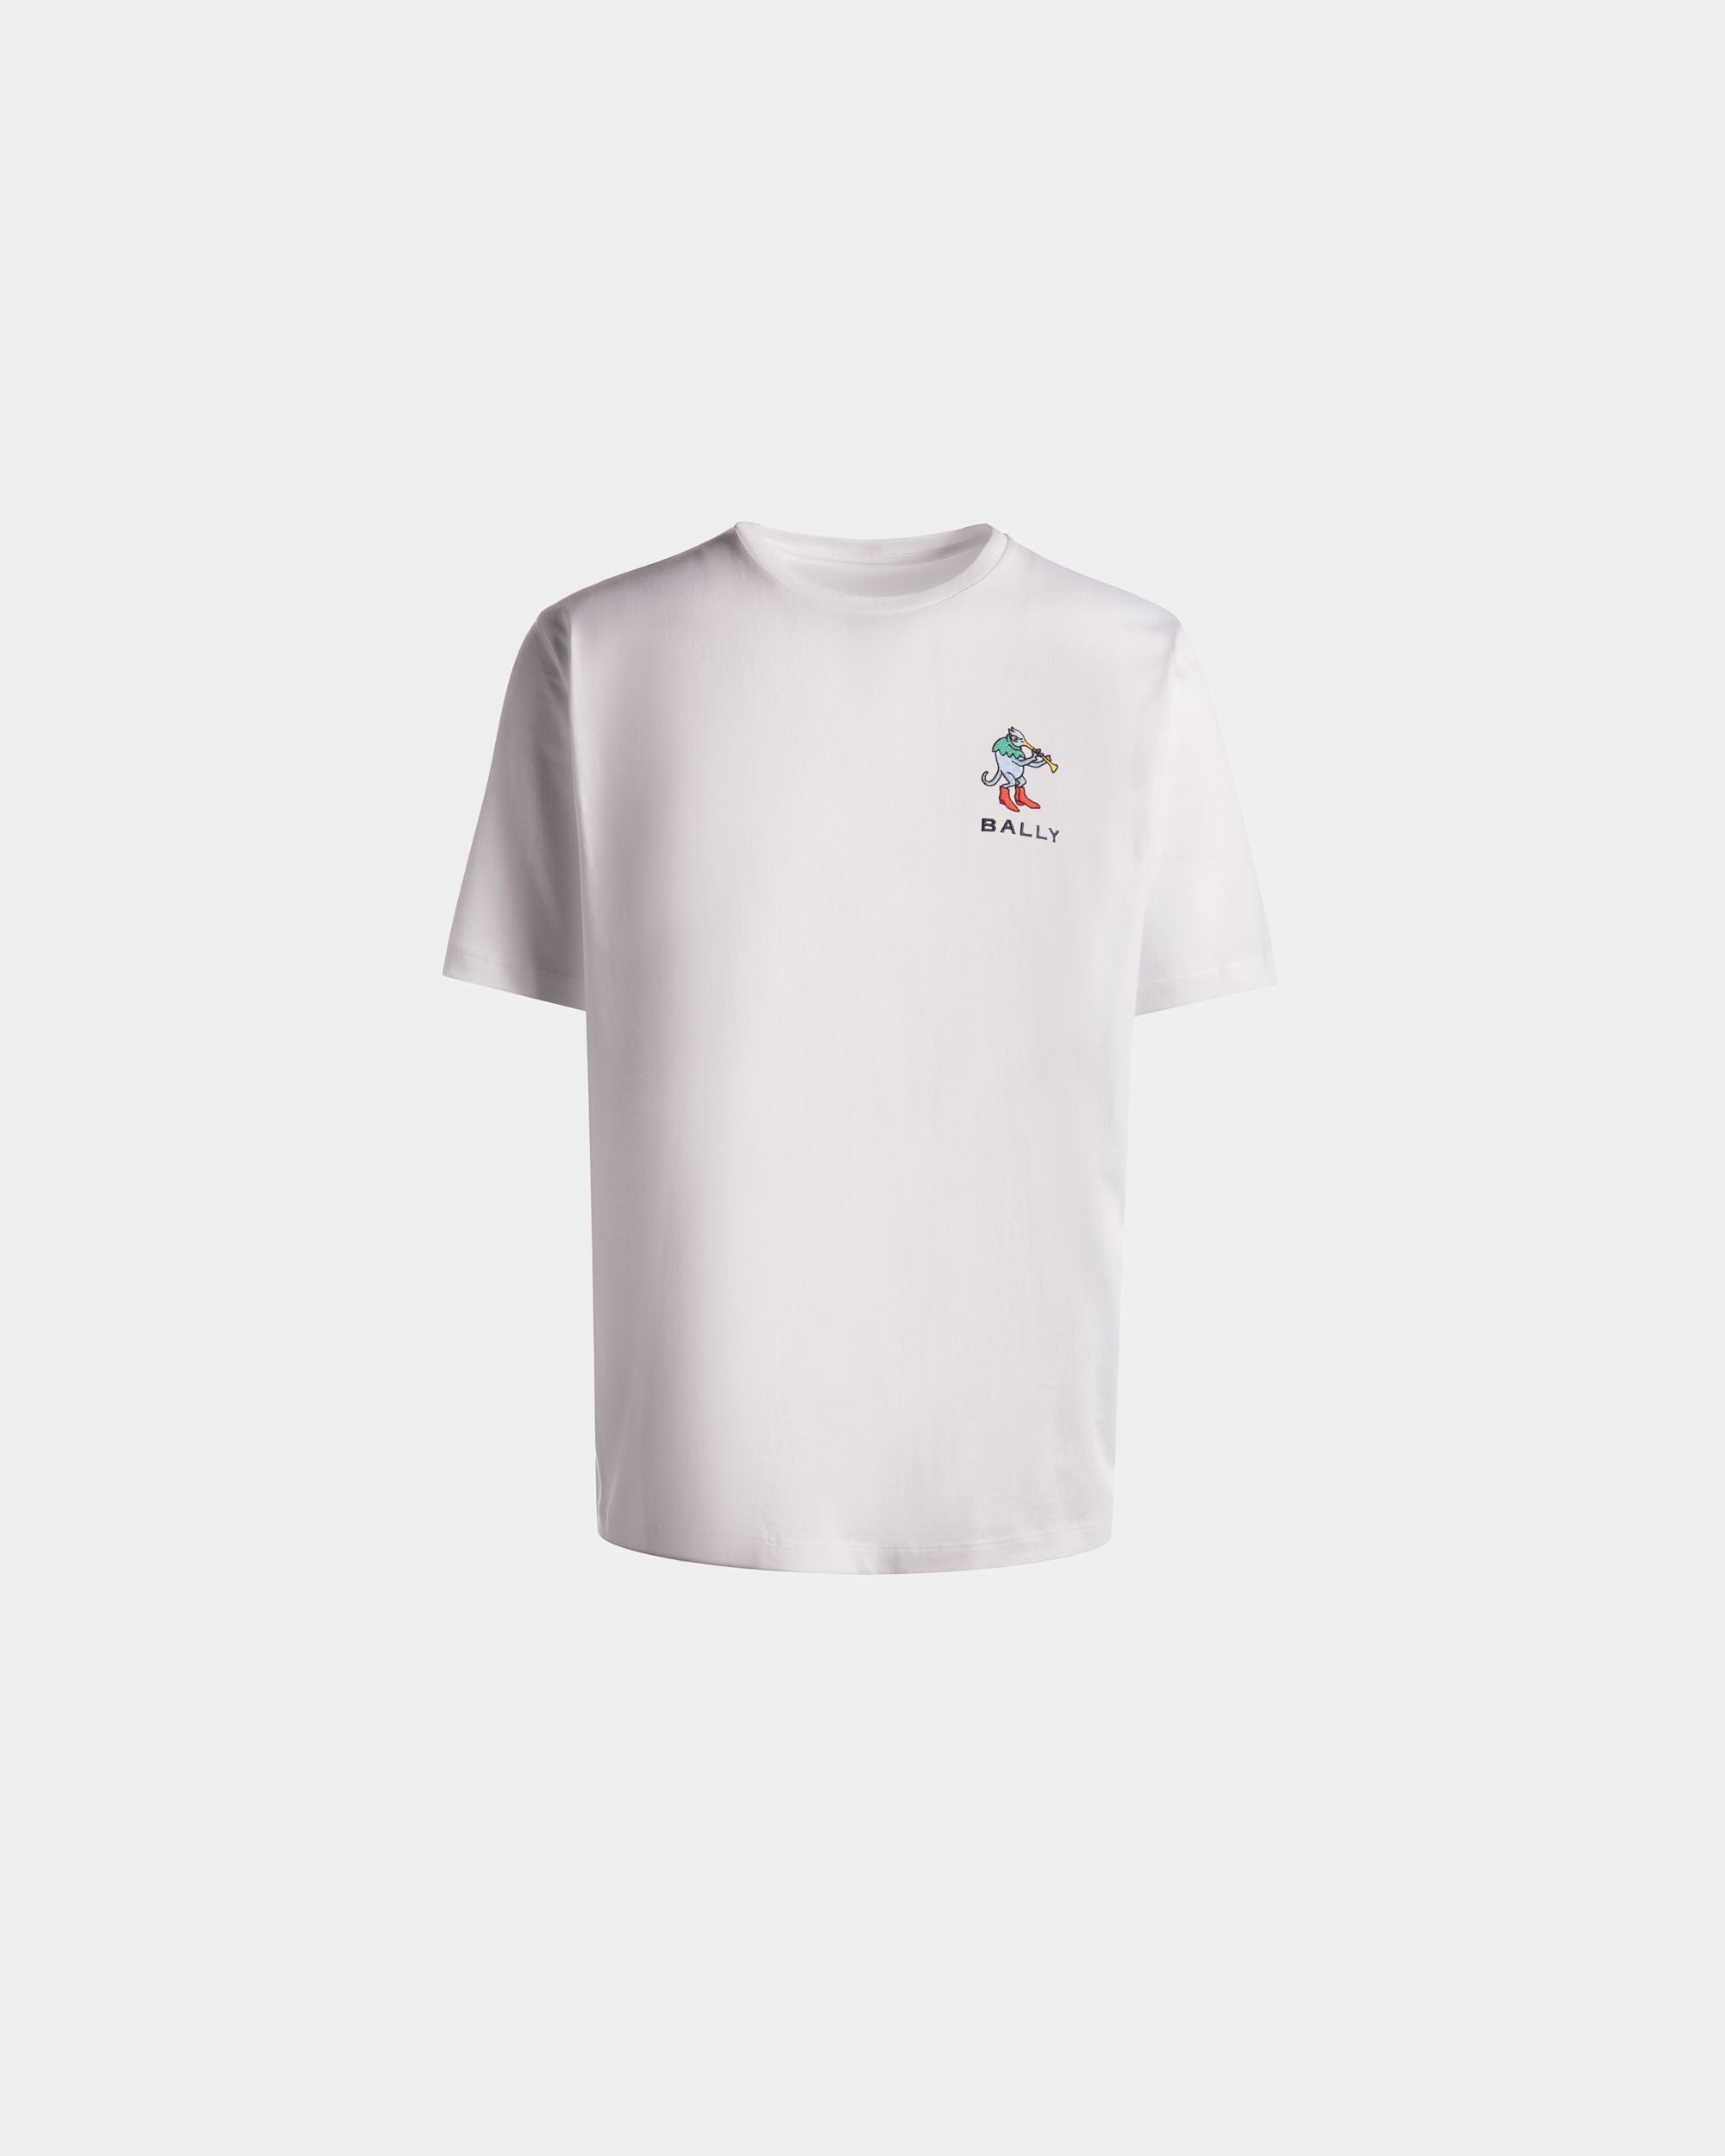 Herren-T-Shirt aus weißer Baumwolle | Bally | Still Life Vorderseite